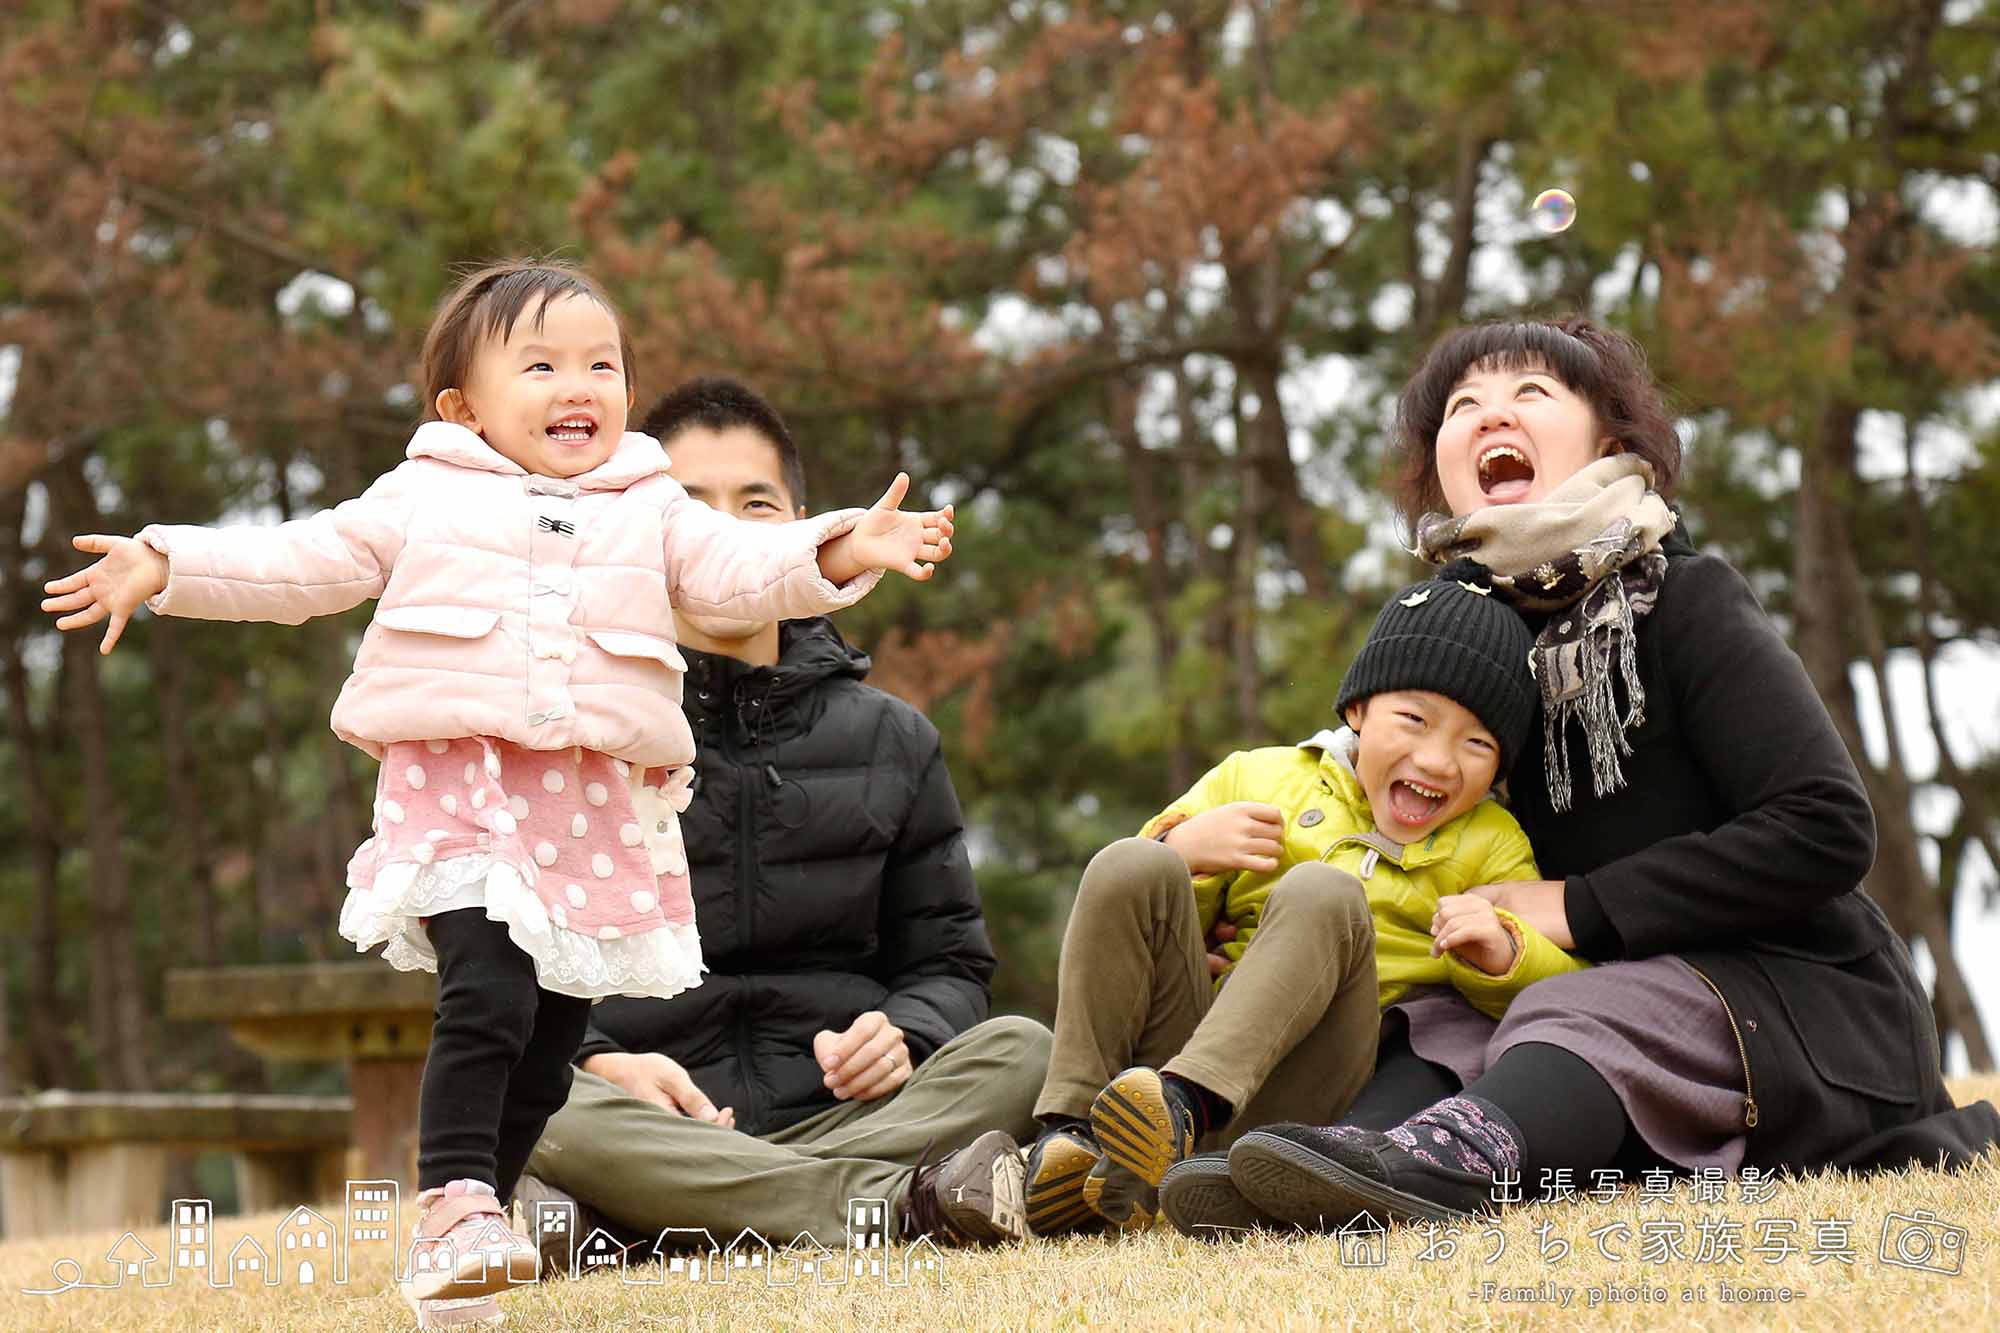 出張写真専門のおうちで家族写真の公園での家族写真